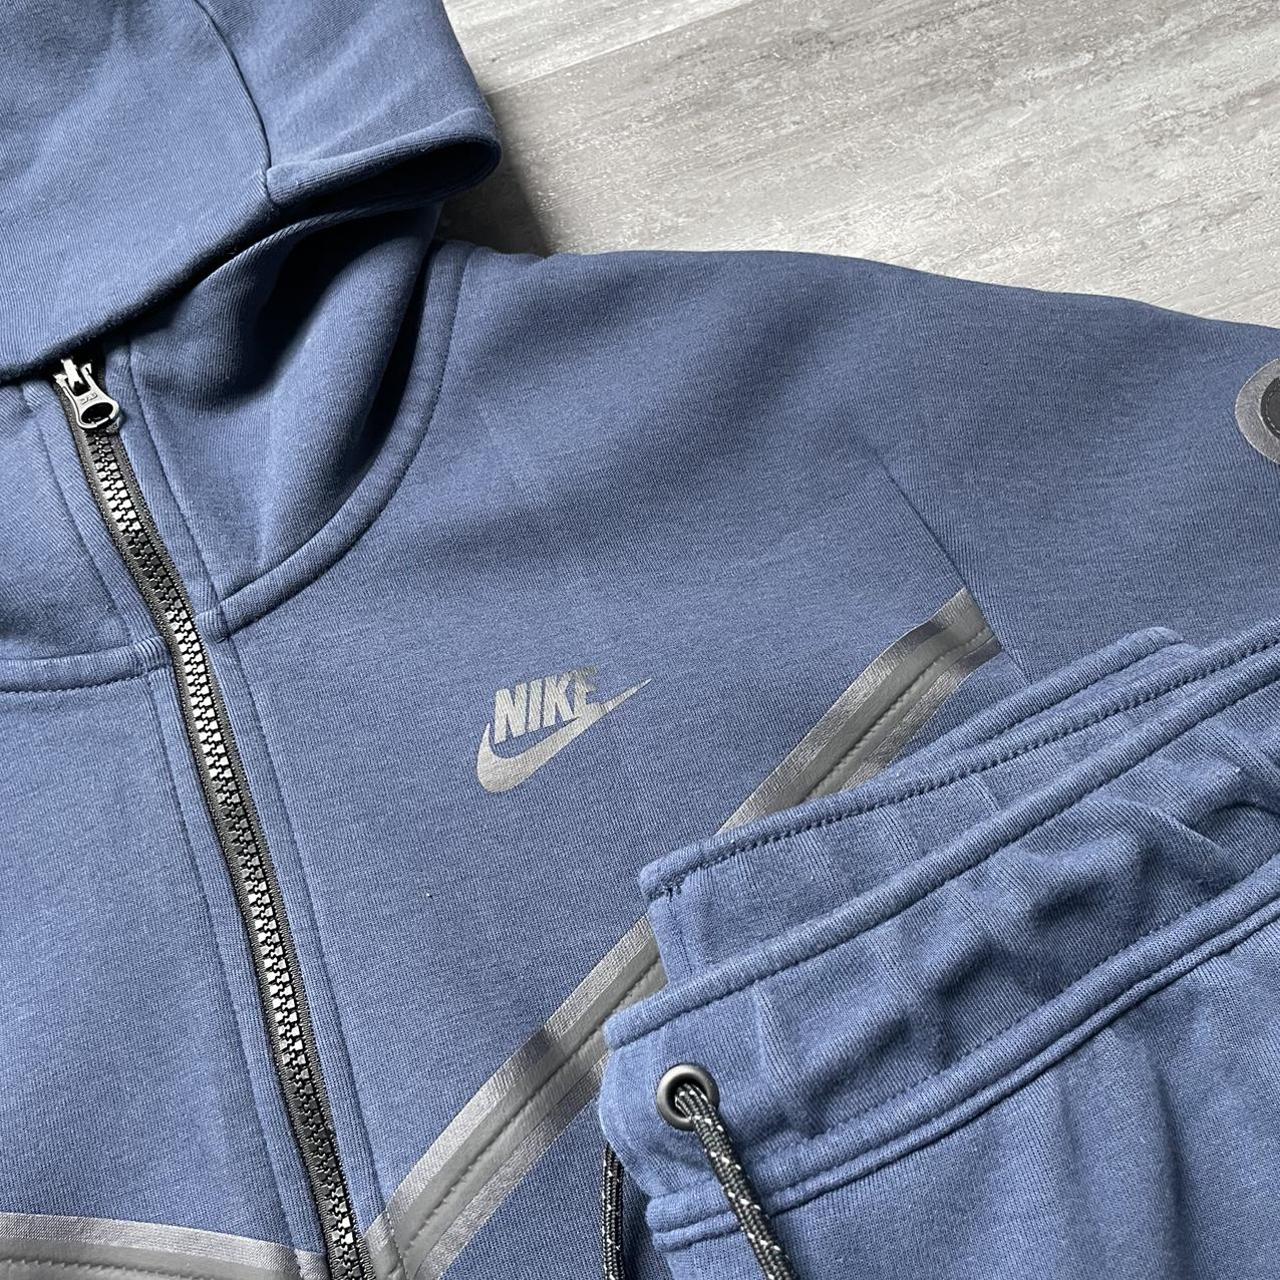 Survêtement Nike Tech Fleece Bleu Marine ️ Taille... - Depop